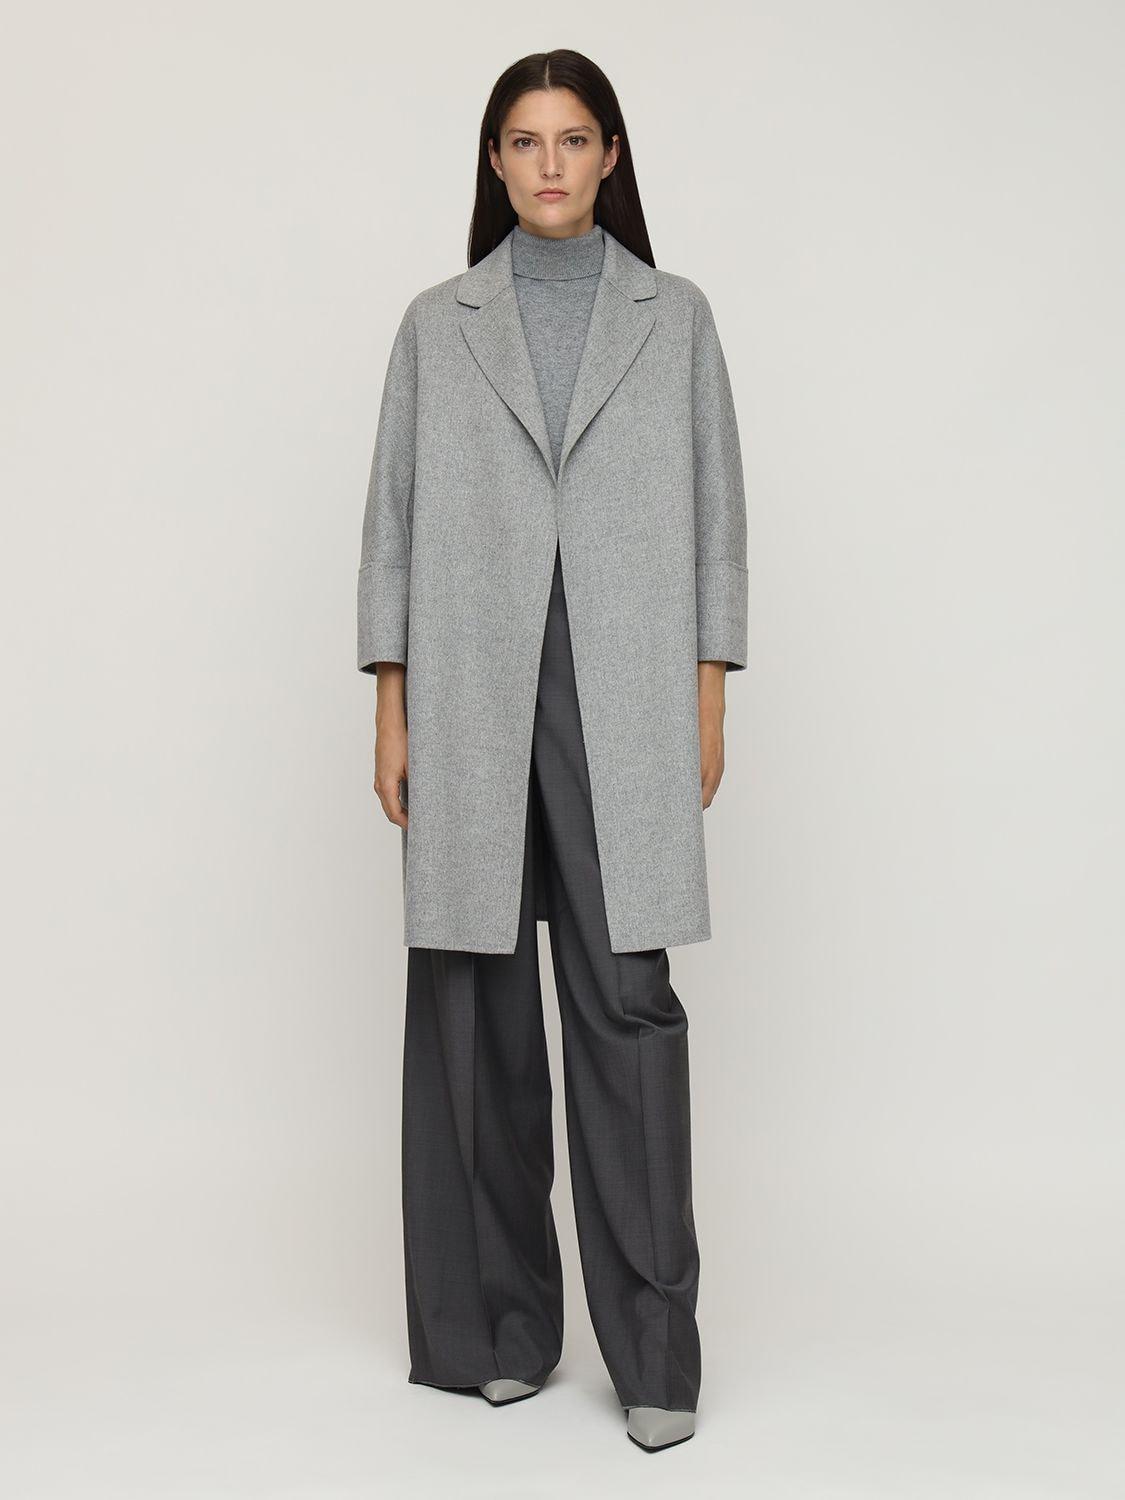 Max Mara Arona Wool Coat in Grey (Gray) - Lyst